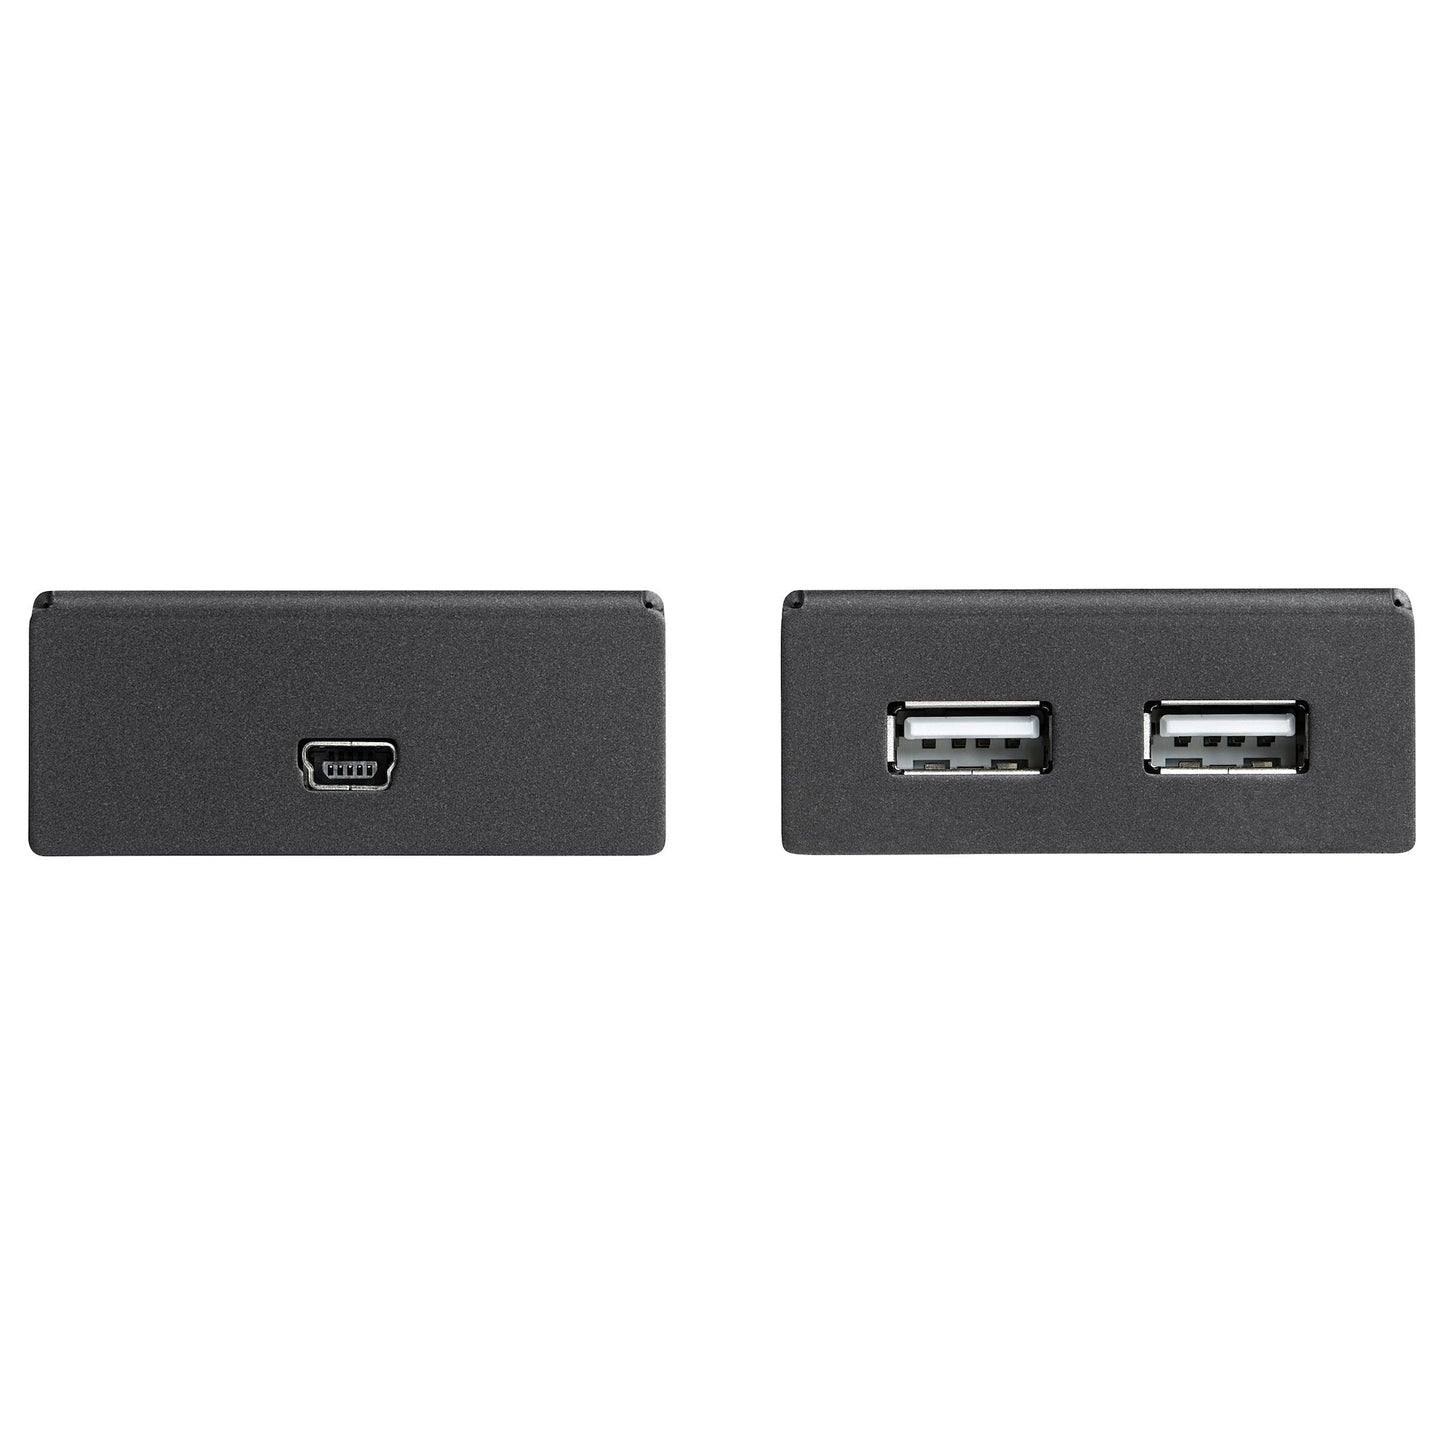 Extensor USB 2.0 STARTECH de 4 Puertos por Cable Cat5 o Cat6, color negro